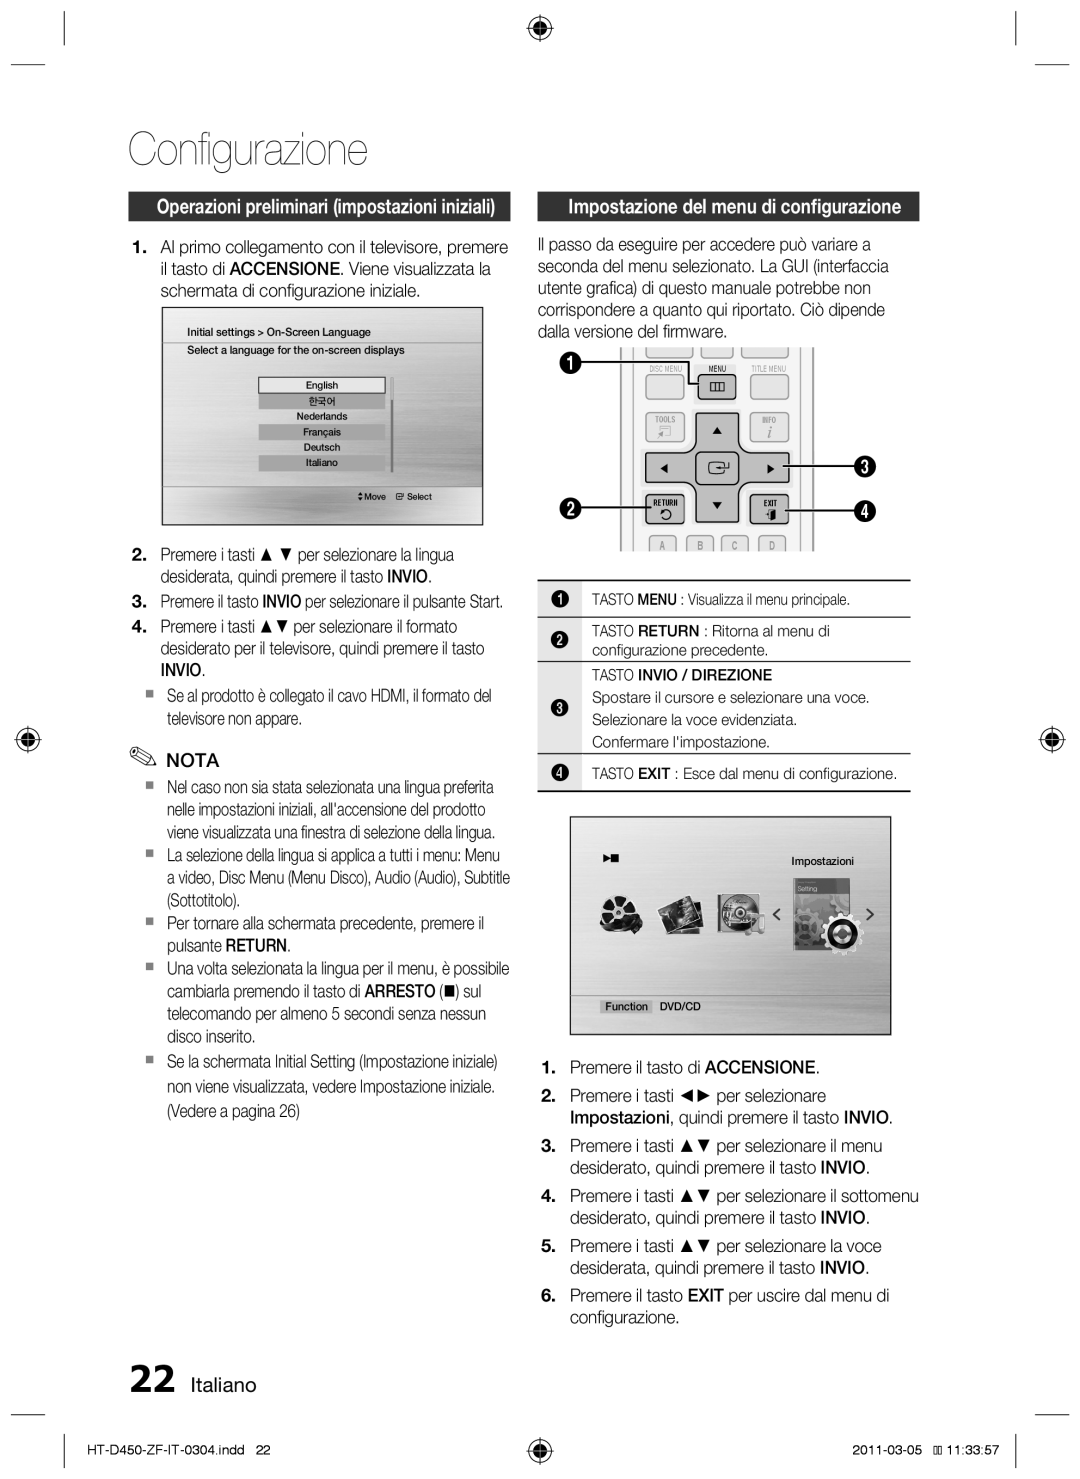 Samsung HT-D455, HT-D450 Configurazione, Impostazione del menu di configurazione, Italiano, dalla versione del firmware 